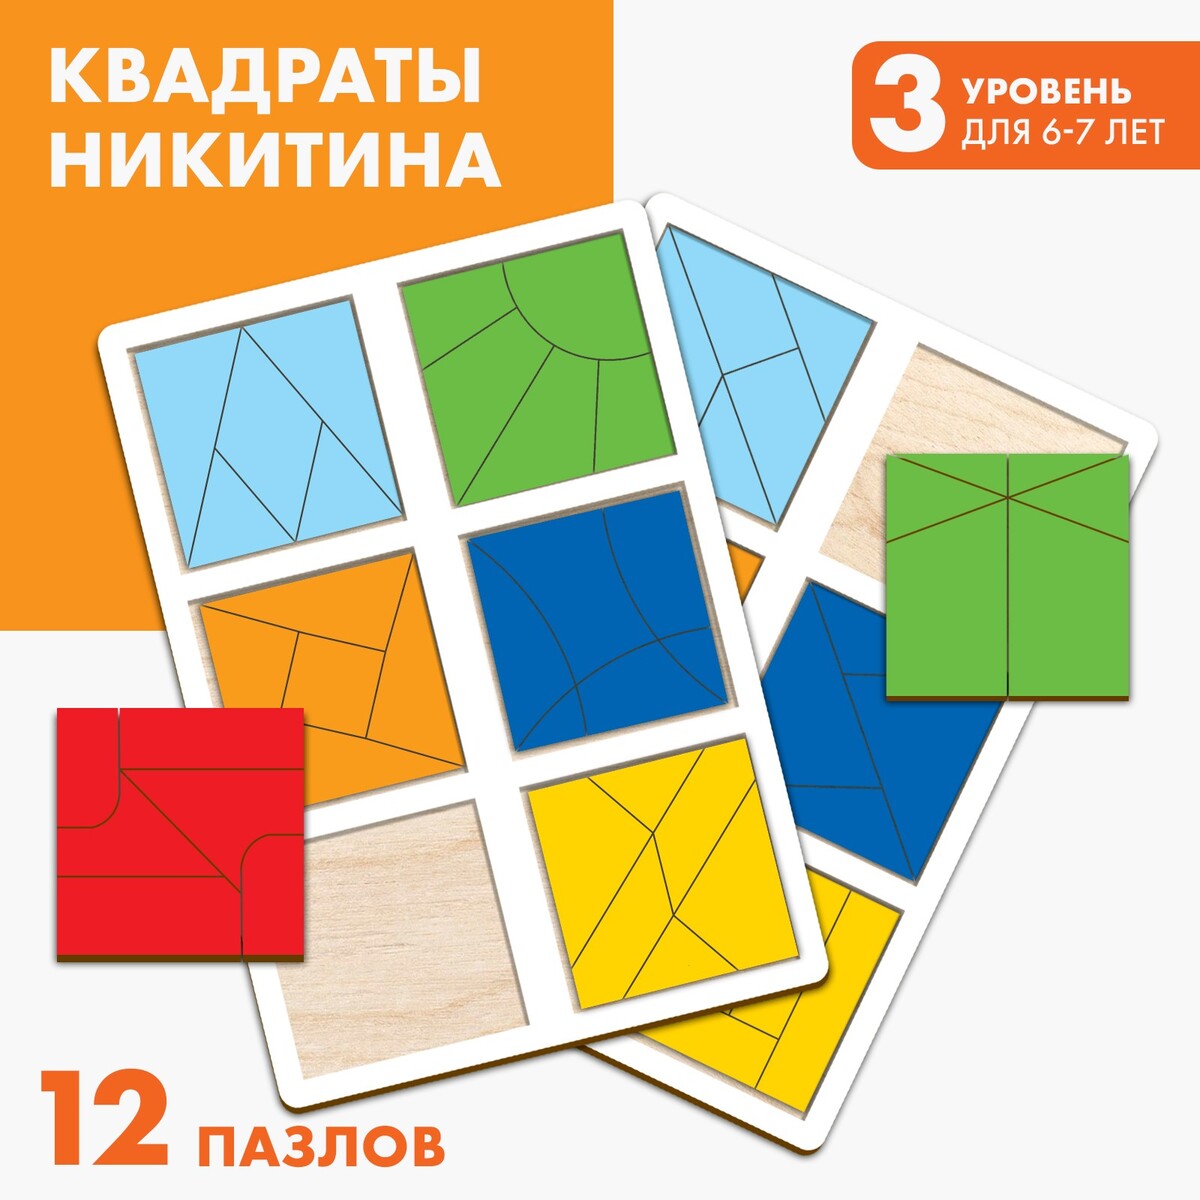 Квадраты 3 уровень (2 шт.), 12 квадратов квадраты никитина 3 уровня 6 квадратов бизиборды